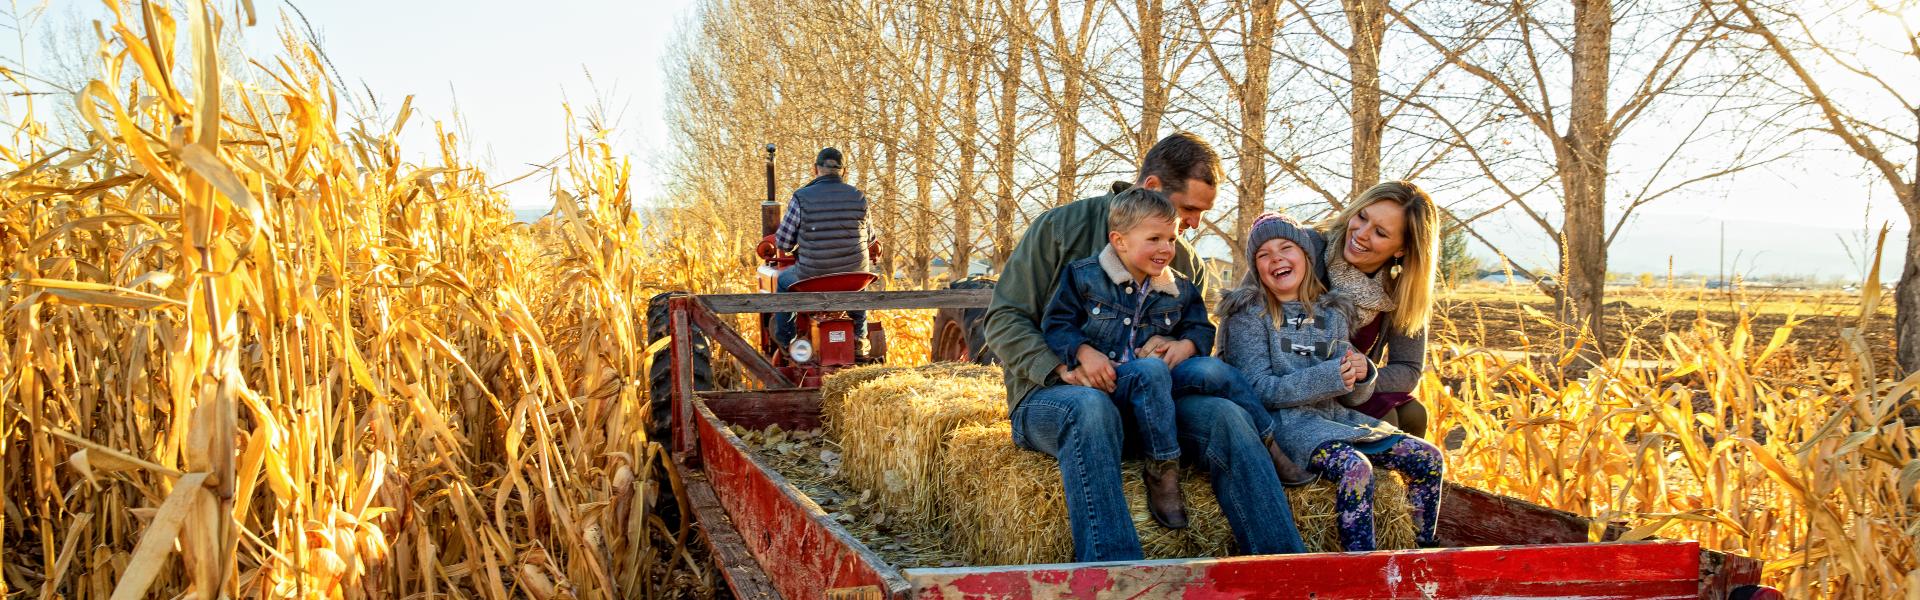 Boerderijvakantie of agriturismo in heel Europa: ontdek het veelzijdige platteland - Casamundo